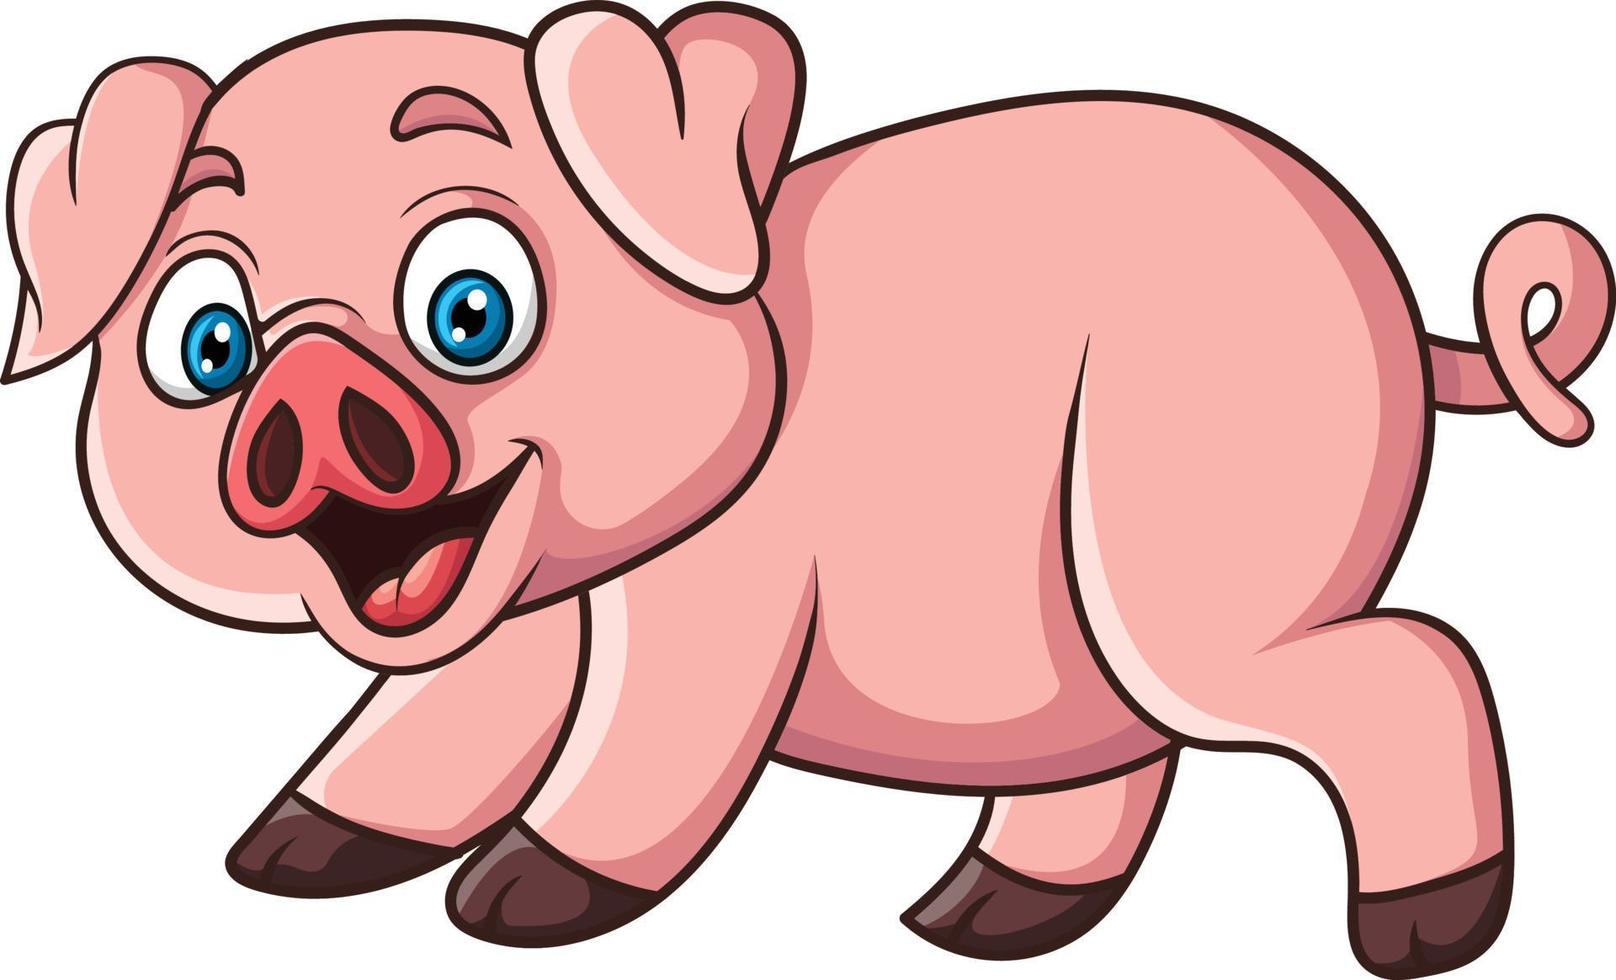 porco engraçado dos desenhos animados no fundo branco vetor